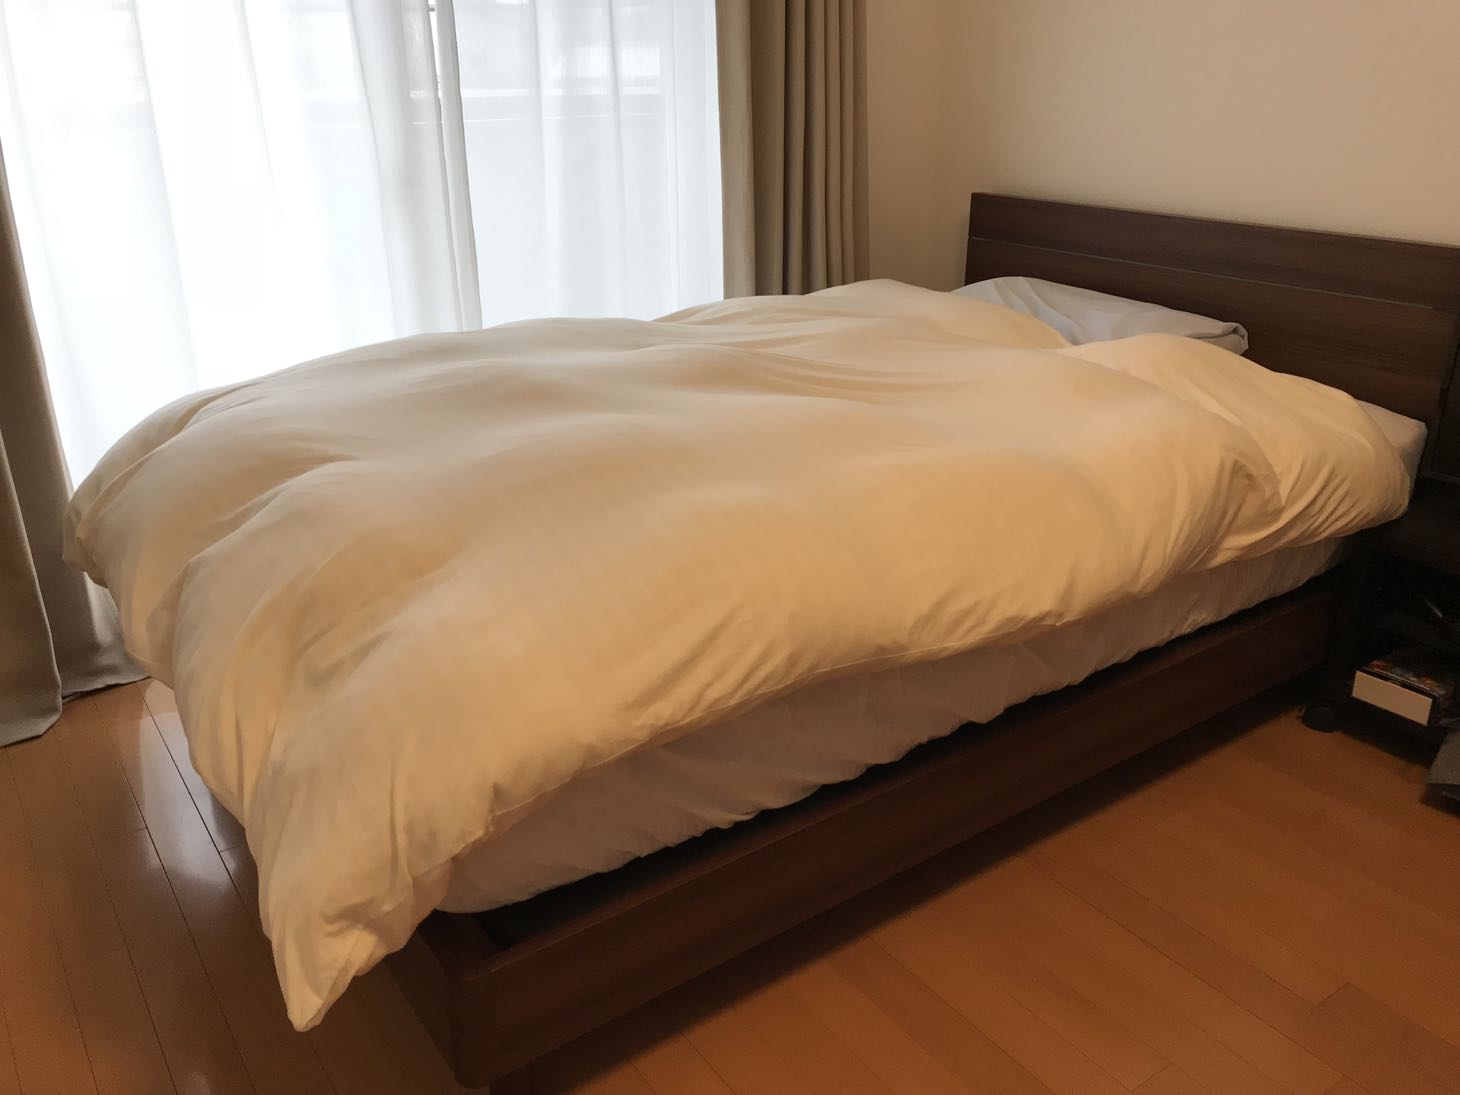 日本ベッド シルキーシフォン